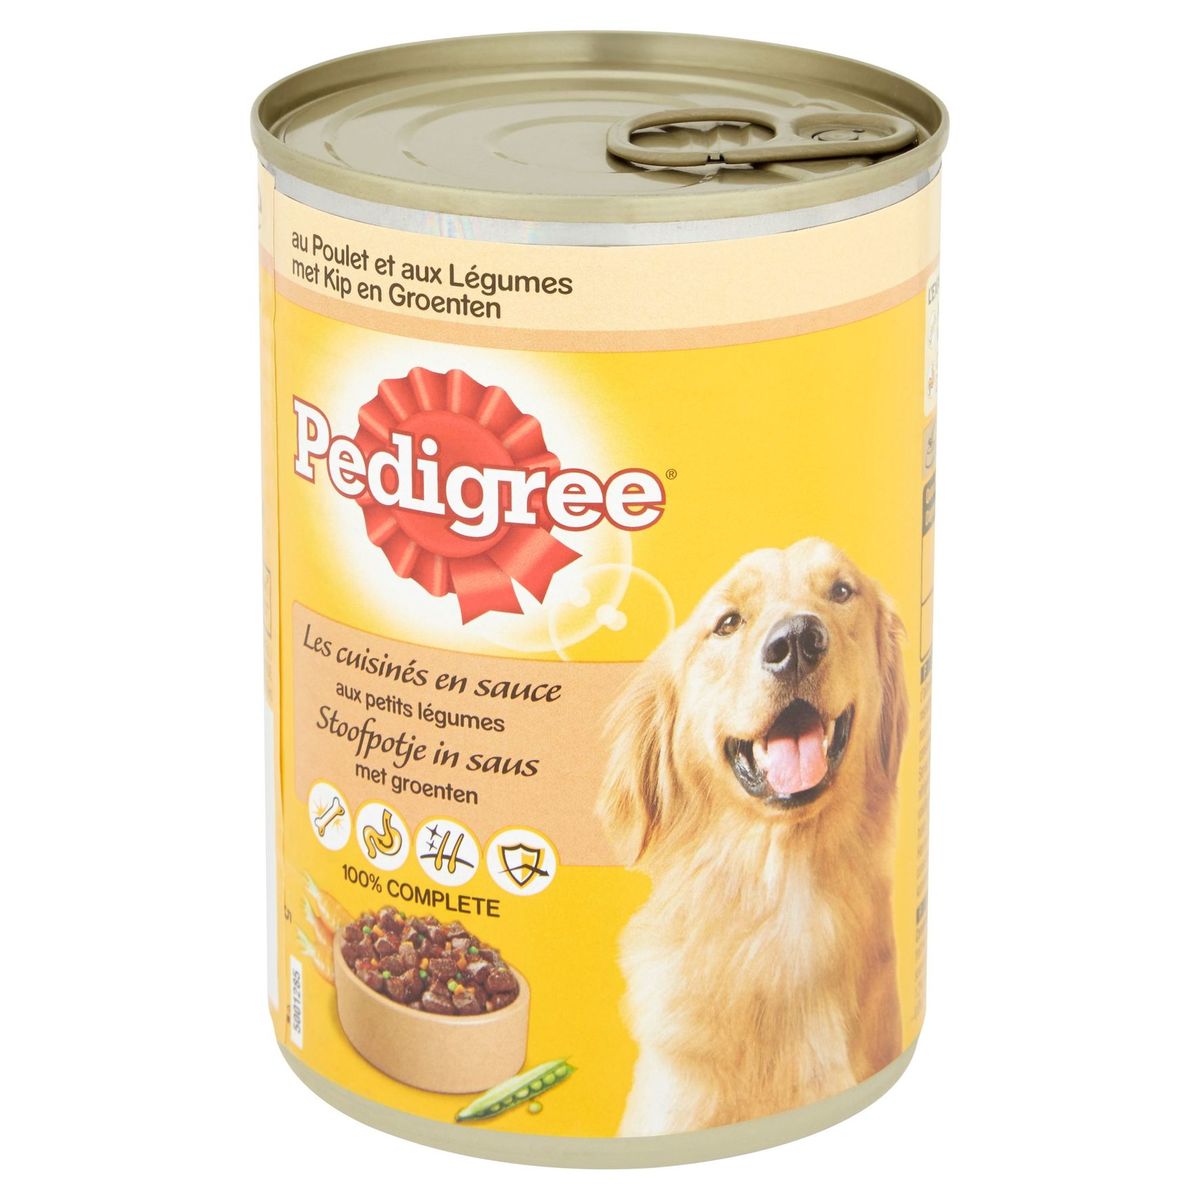 Pedigree Hondenvoeding Stoofpotje in Saus Blikken met Groenten 400 g